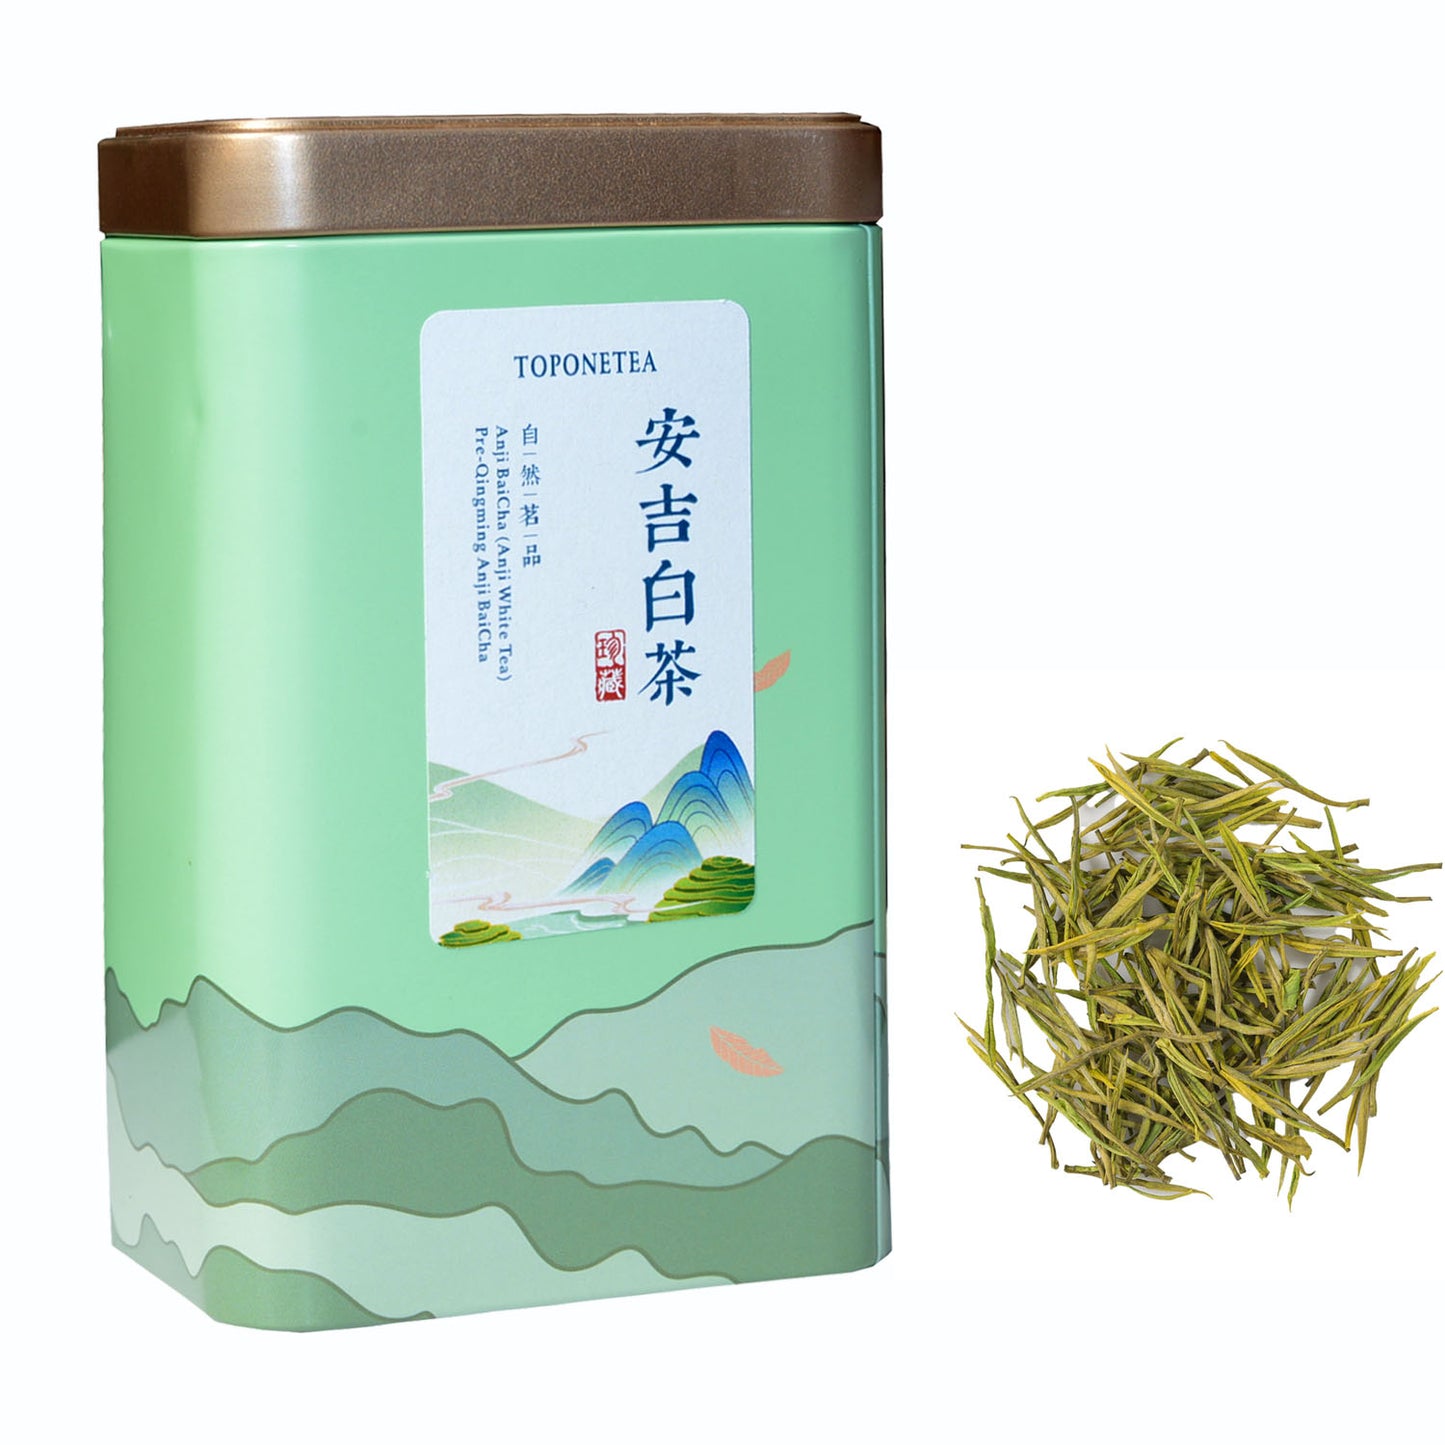 AnJi Baicha, er ist authentischer Anji-weißer Tee, organischer, lockiger grüner Tee aus grünem Blatt-erste Klasse-2,1 Unzen/60g